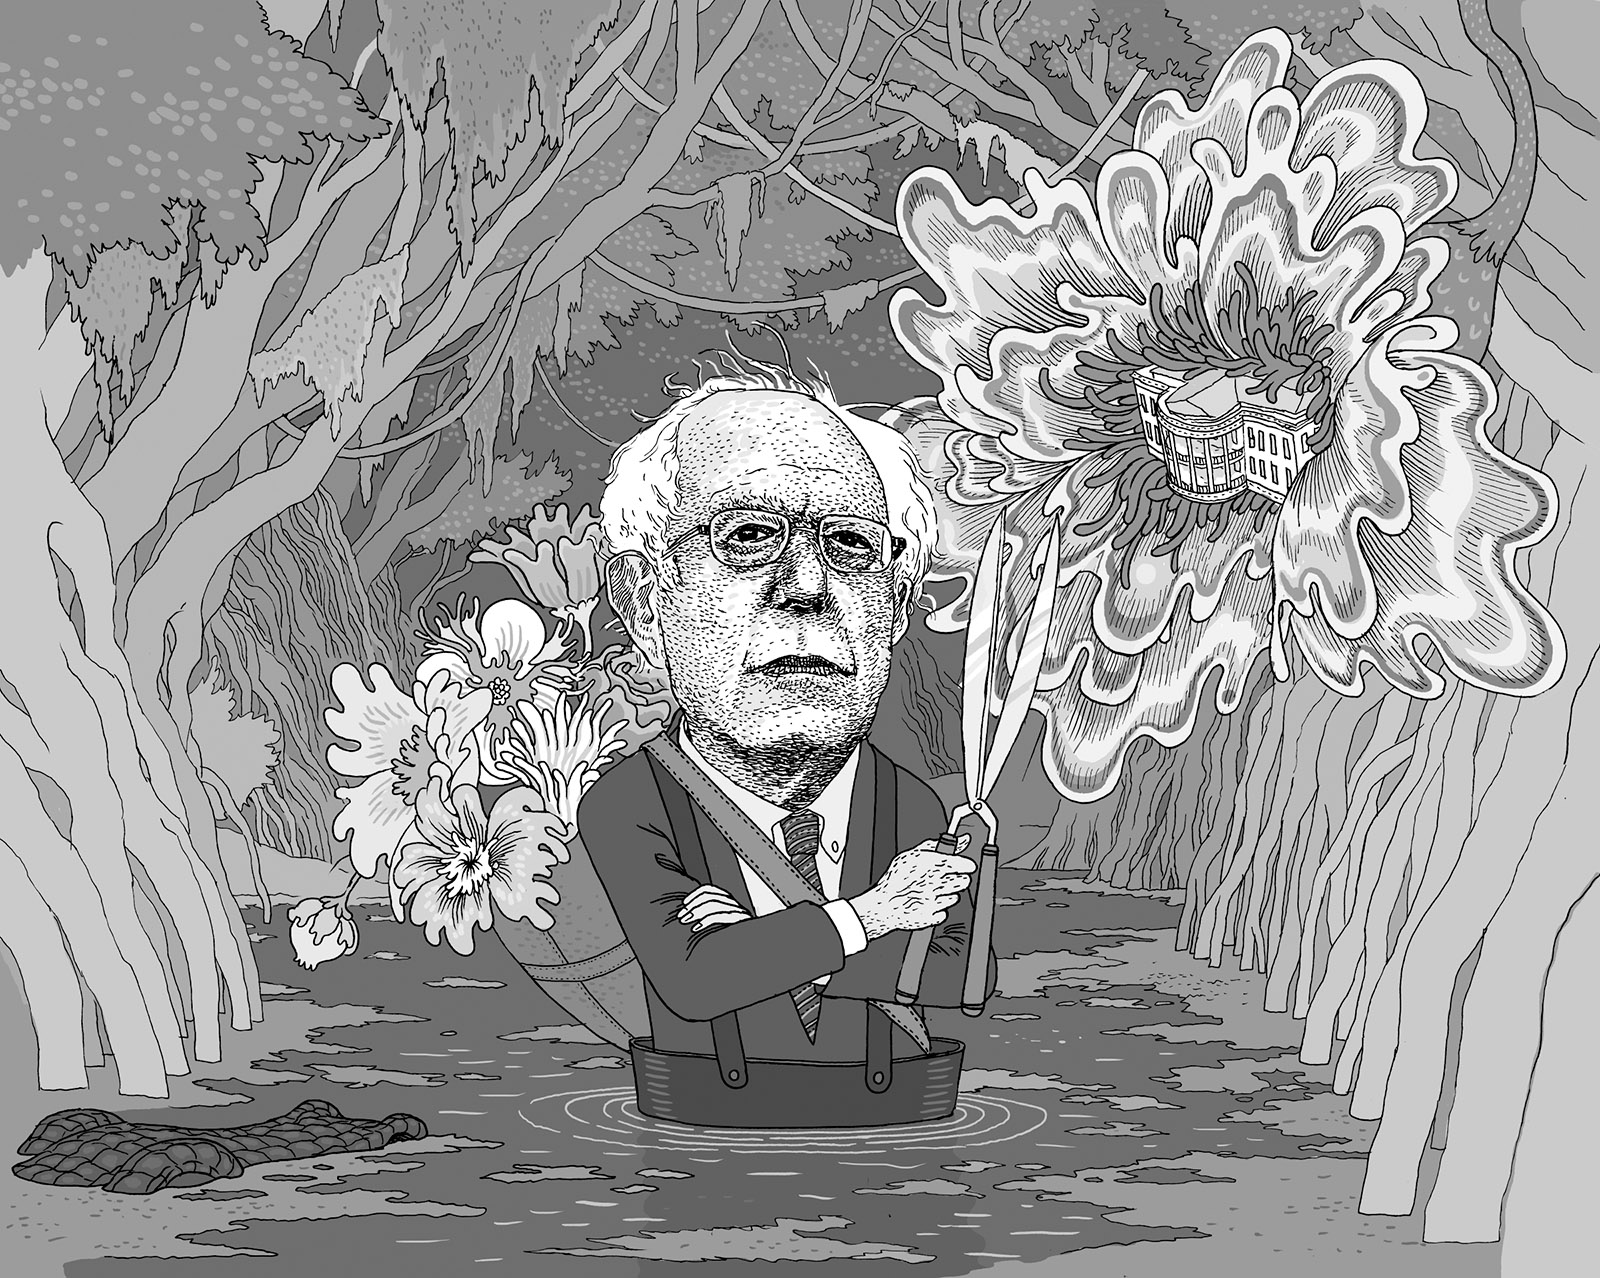 Bernie Sanders; drawing by Anders Nilsen